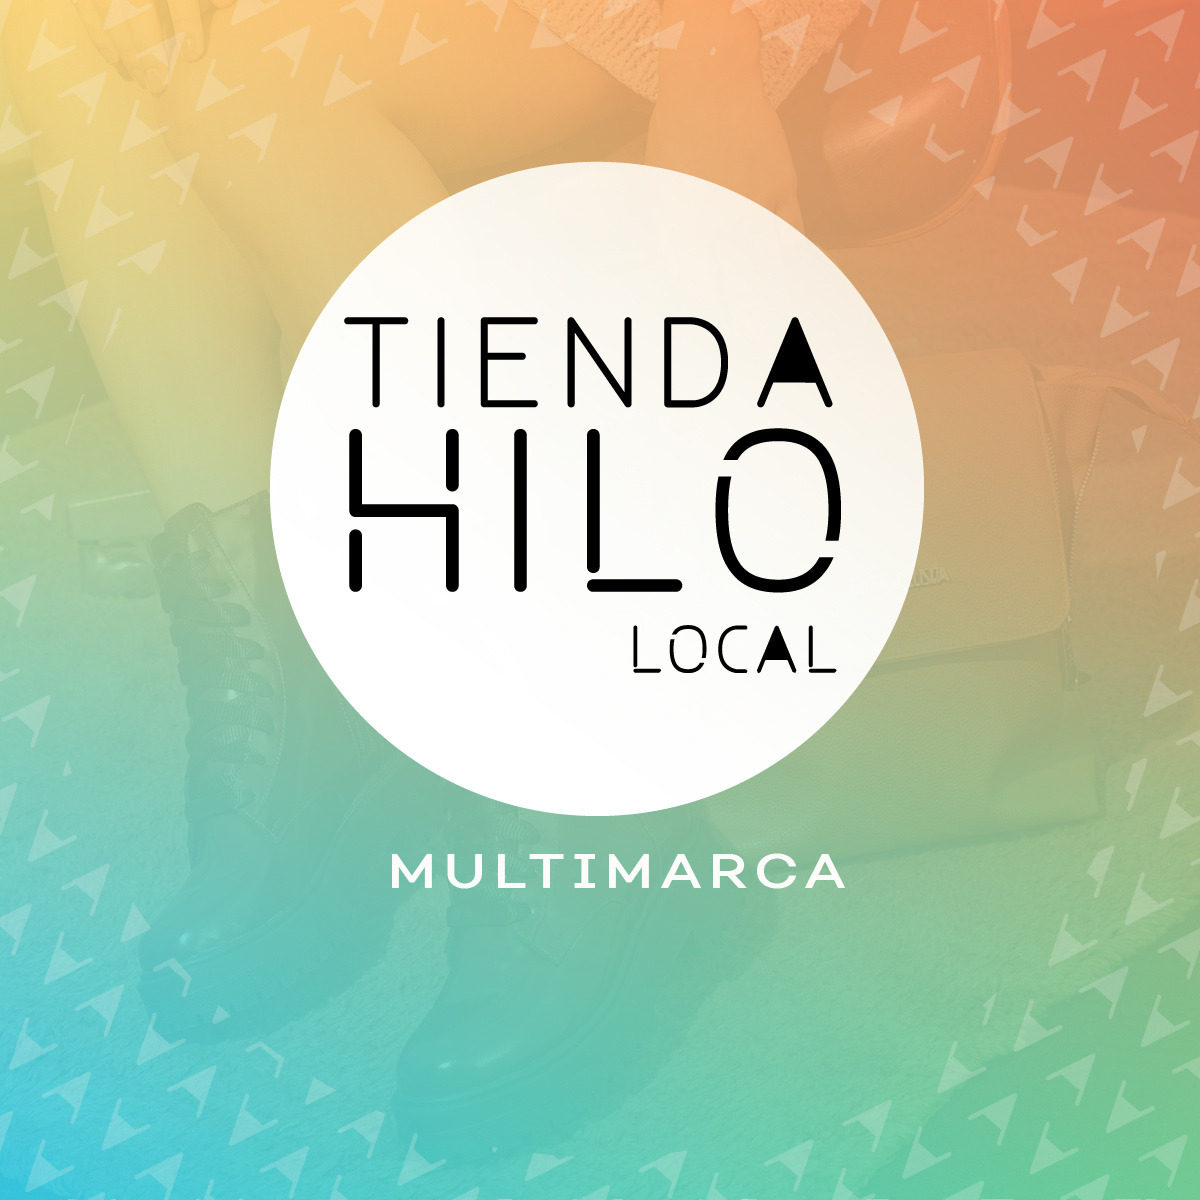 Tienda Hilo Local